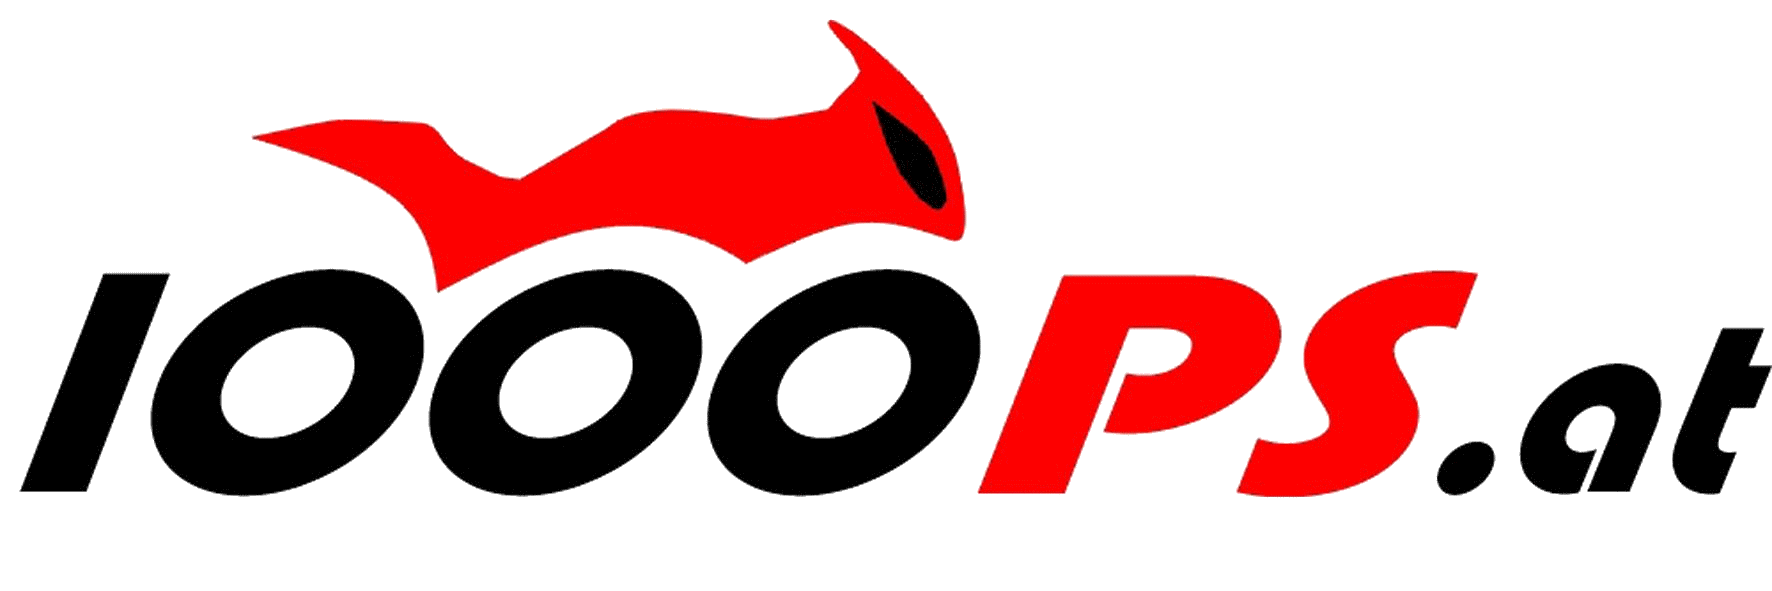 logo1000ps.gif (46973 Byte)